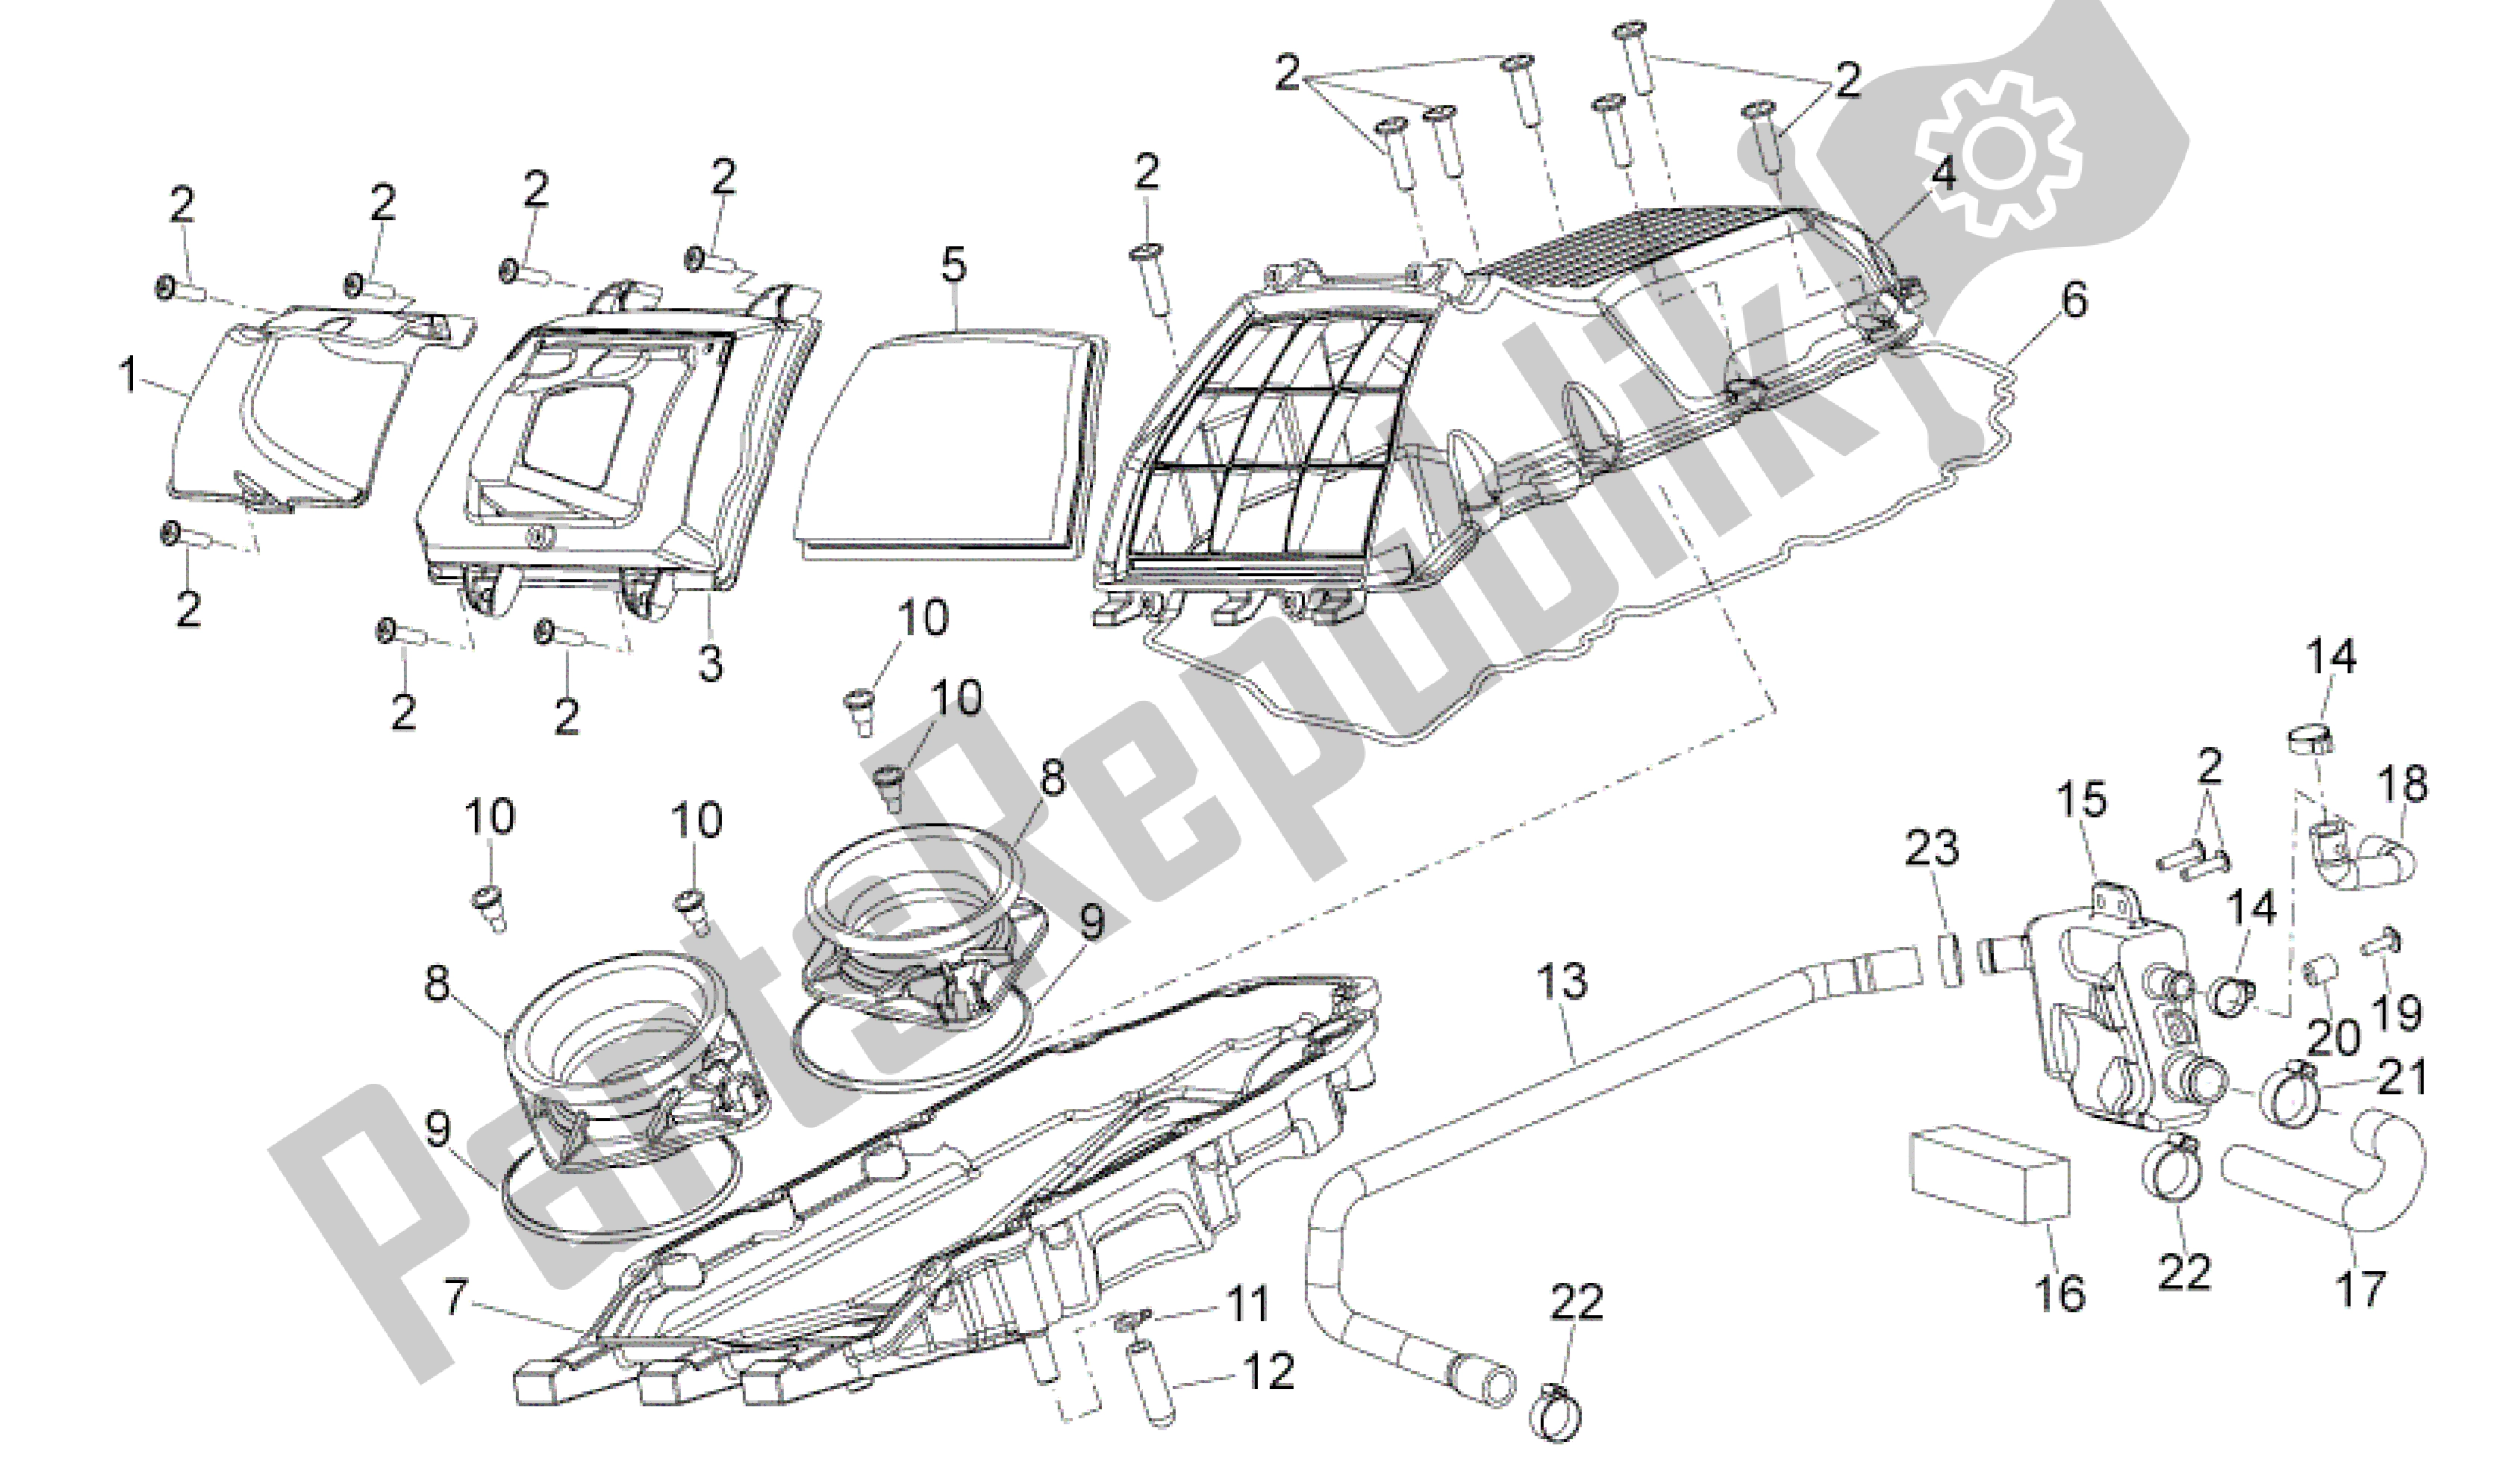 All parts for the Air Box of the Aprilia Dorsoduro 1200 2010 - 2013